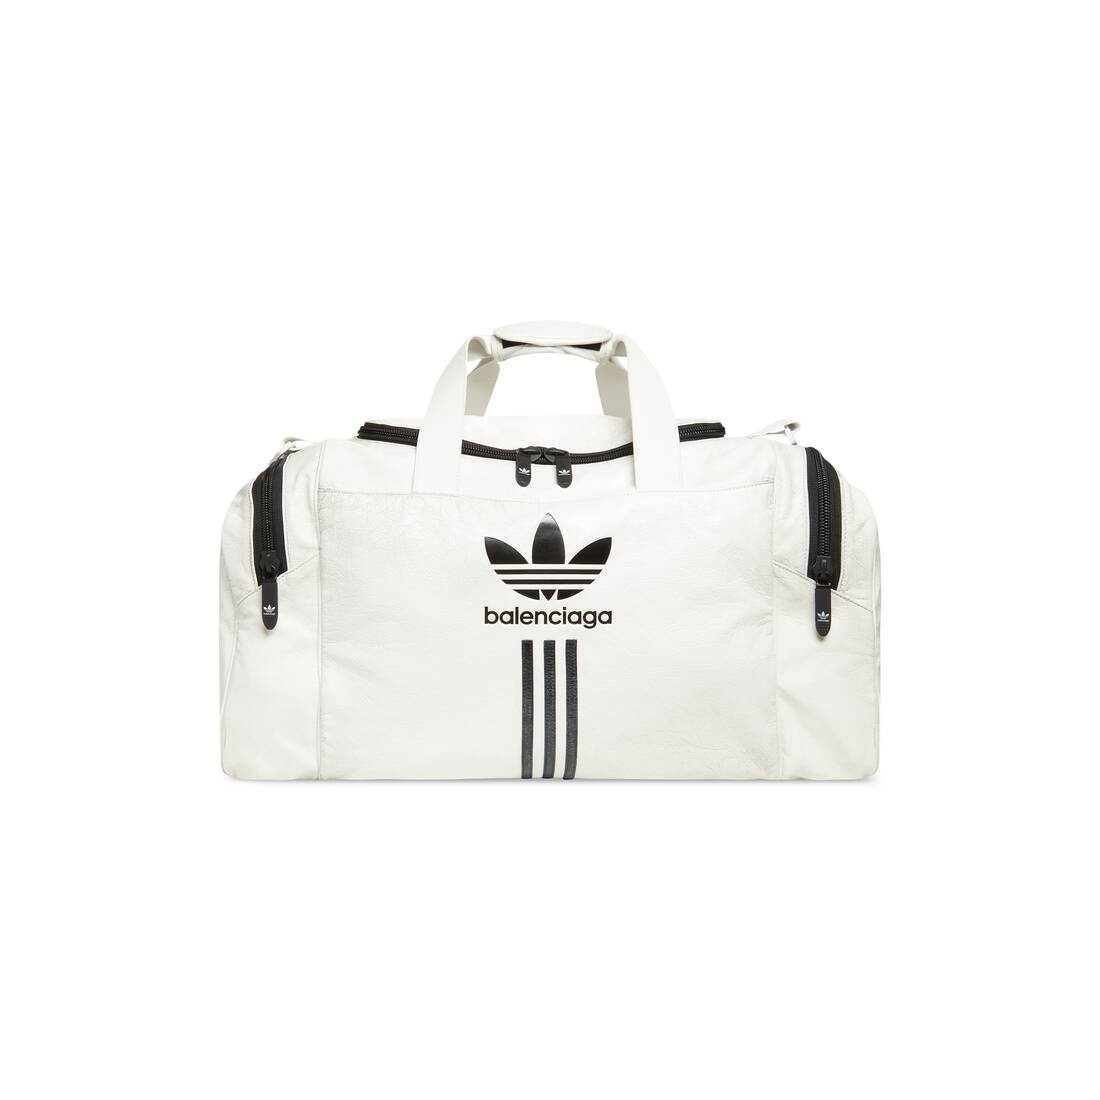 Men's Balenciaga / Adidas Gym Bag  in White - 1